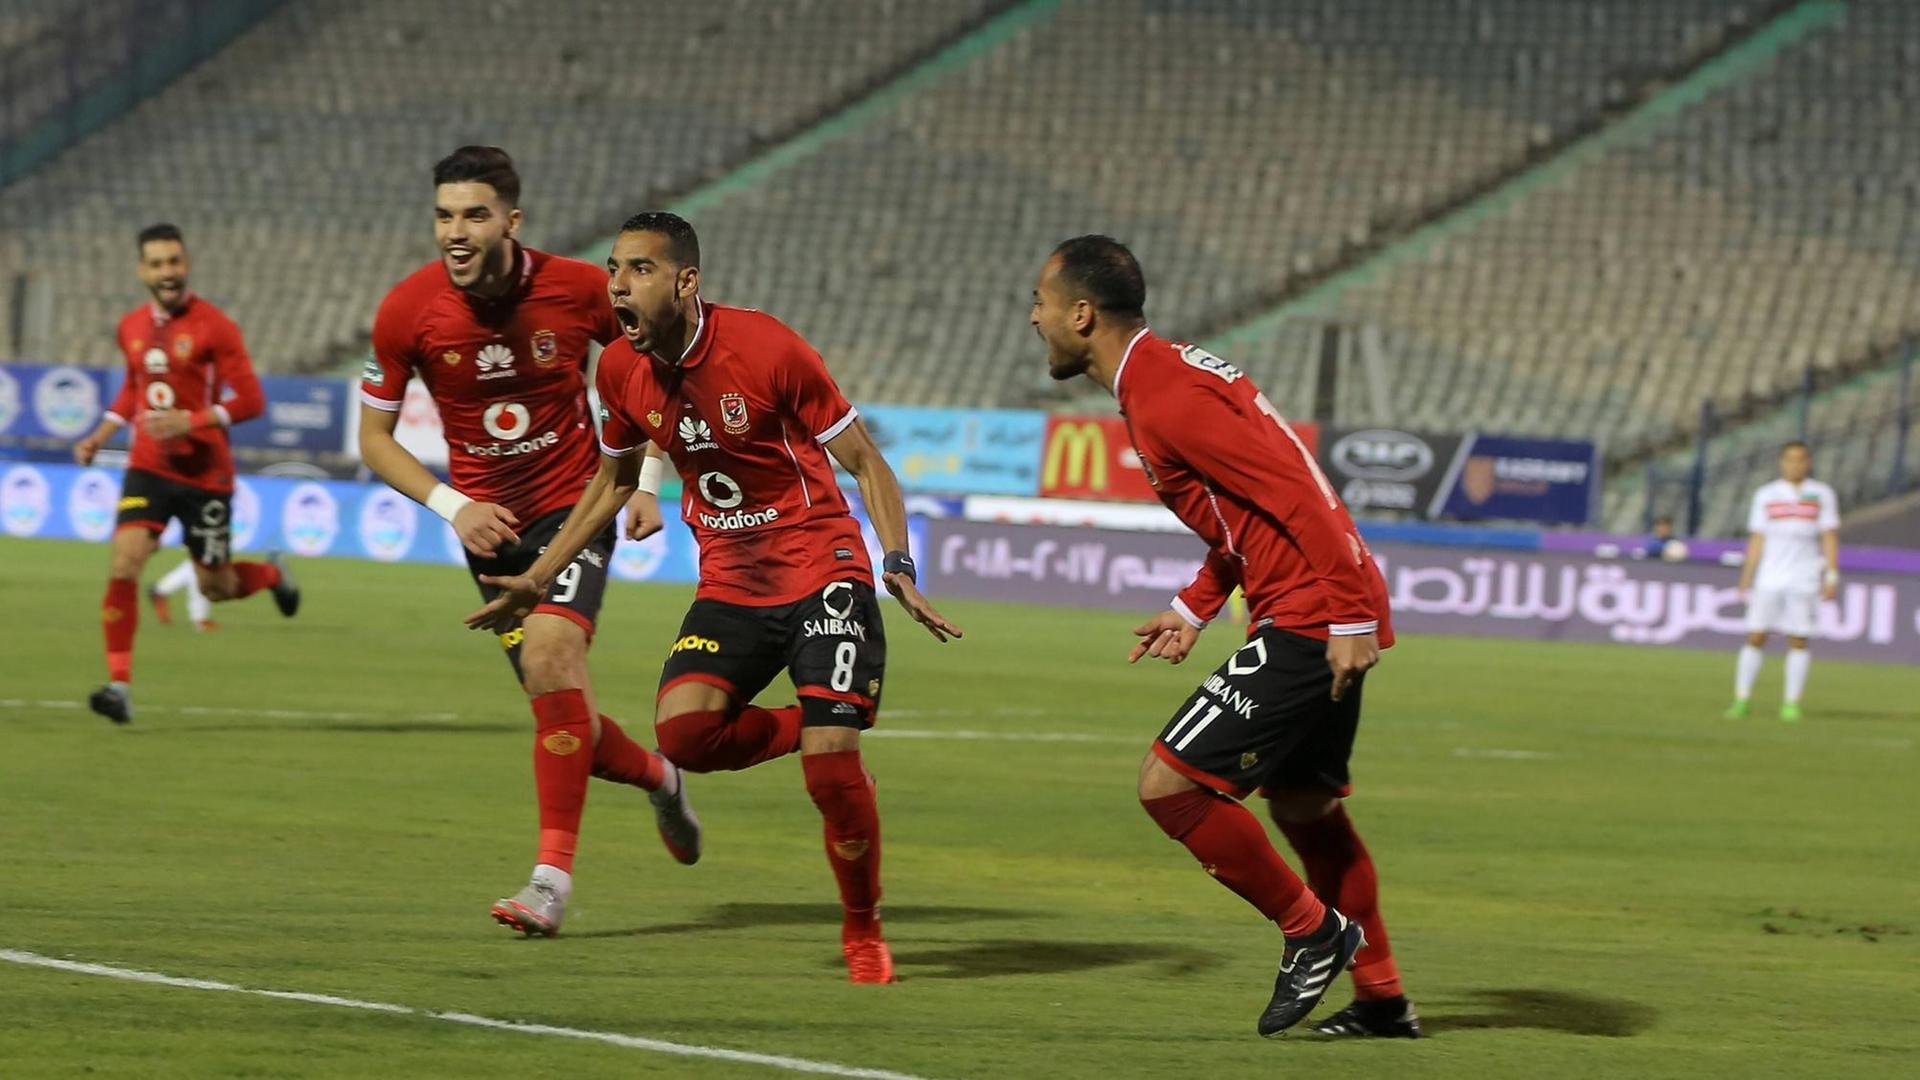 Die Mannschaften von Al-Ahly und Zamalek spielen im Januar 2018 vor leeren Rängen. Ab September sind in Stadien wieder Zuschauer zugelassen.